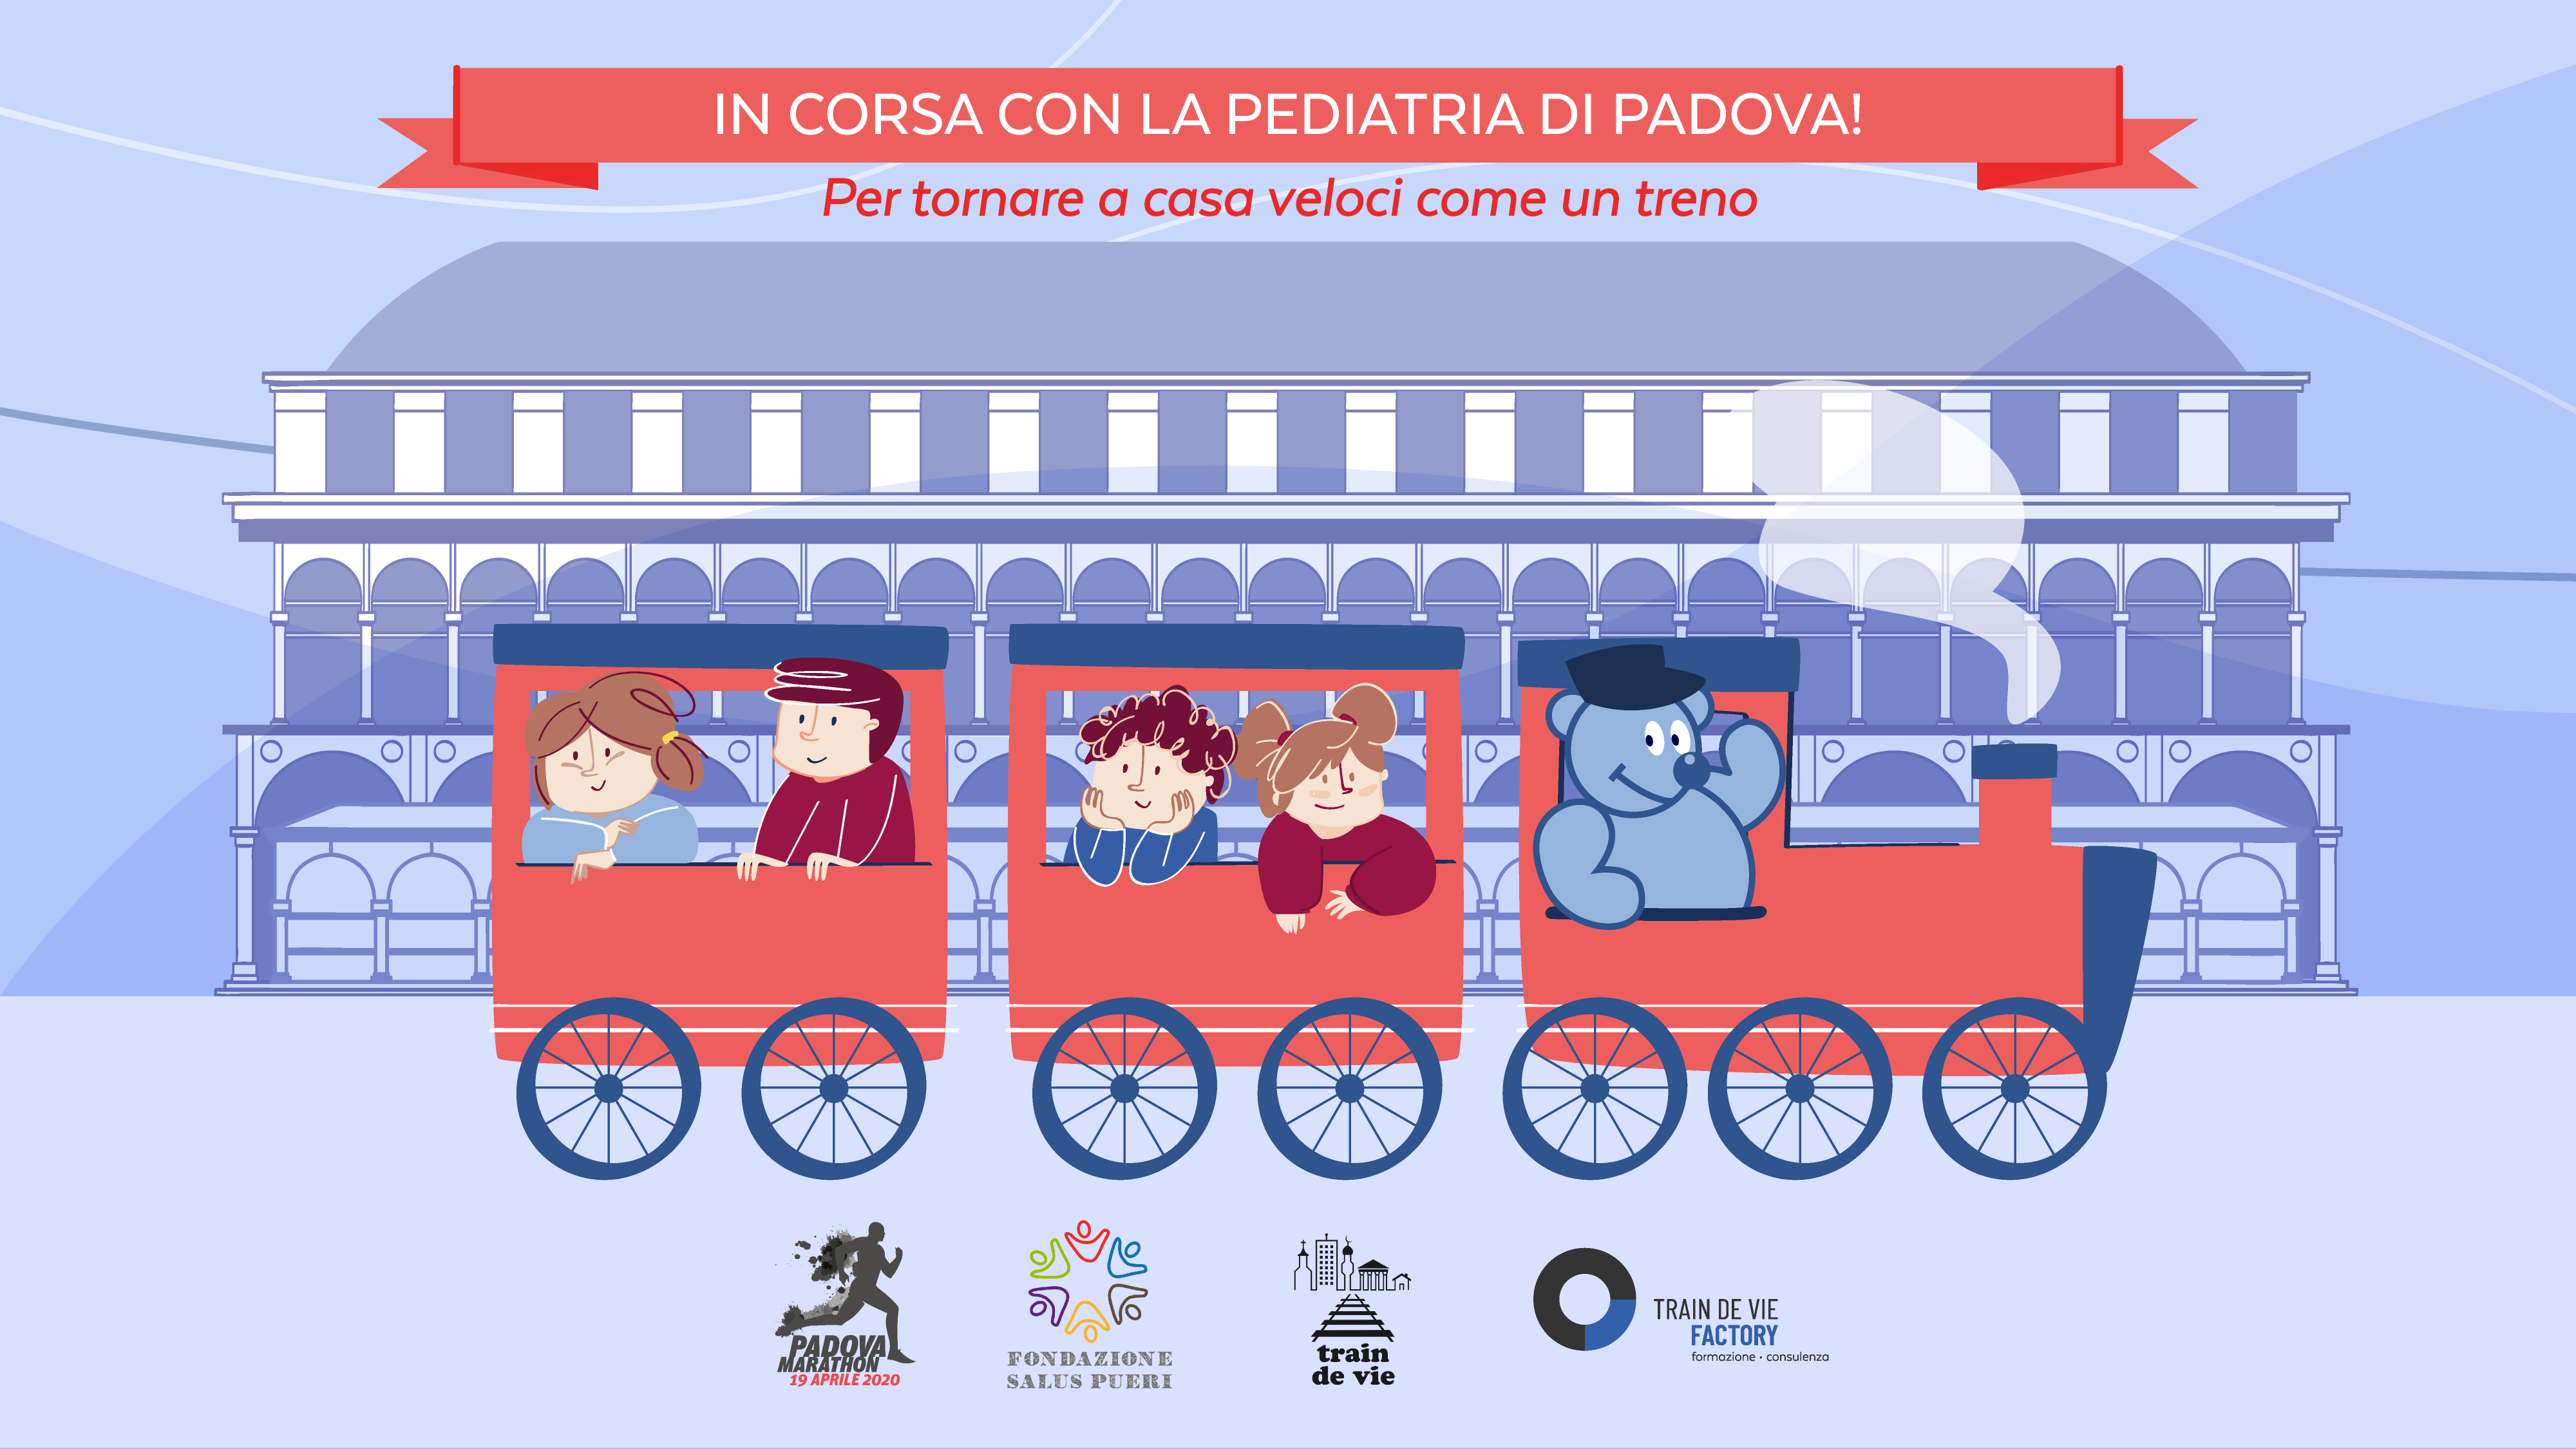 In corsa con la Pediatria di Padova!-Fondazione Salus Pueri